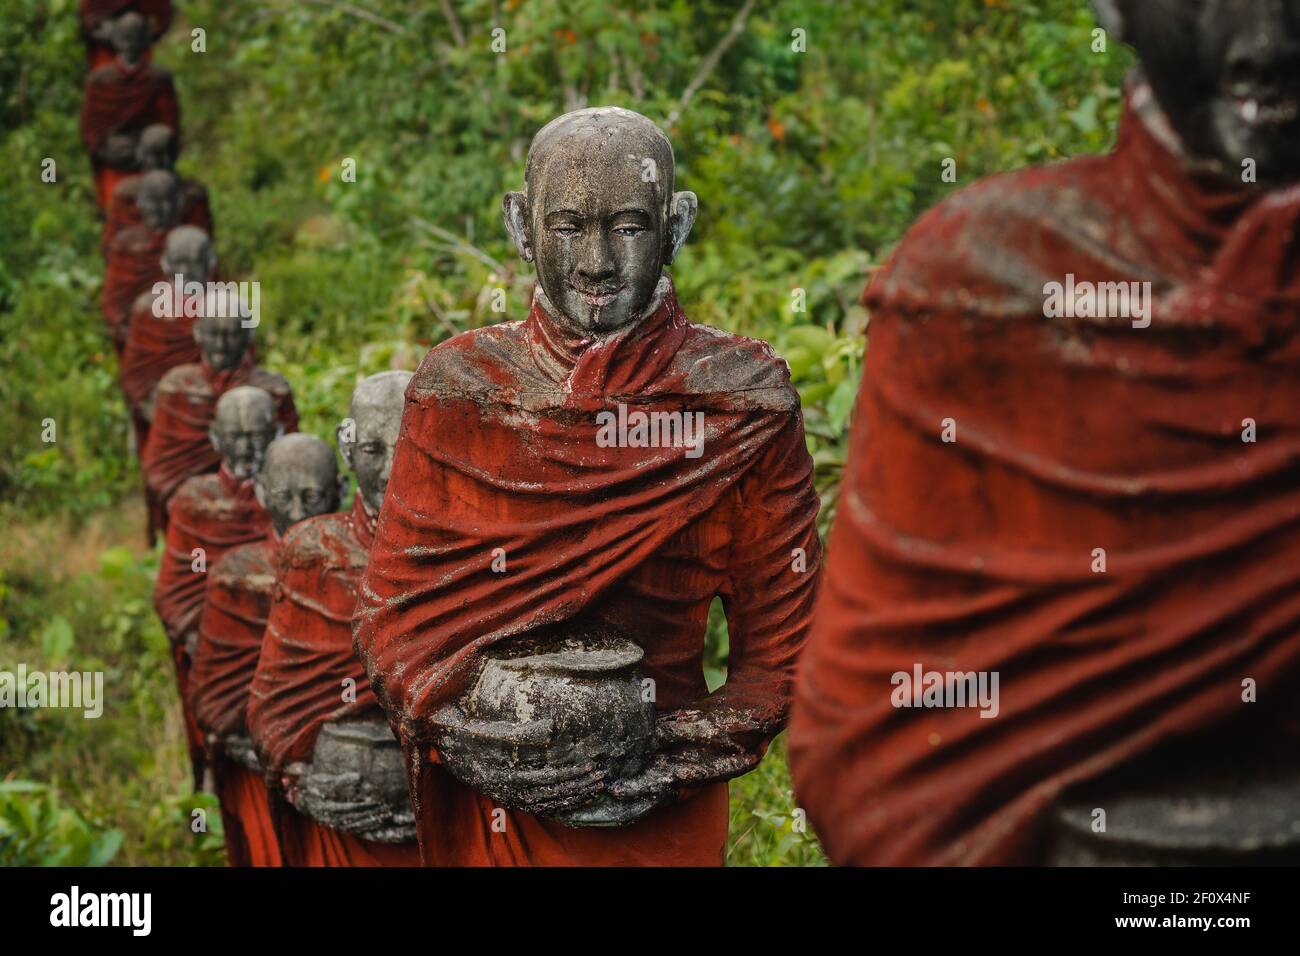 Hunderte von alten Statuen buddhistischer Mönche, die Almosen sammeln, umgeben den Win sein Taw Ya Buddha in Mawlamyine, Myanmar (Burma). Stockfoto